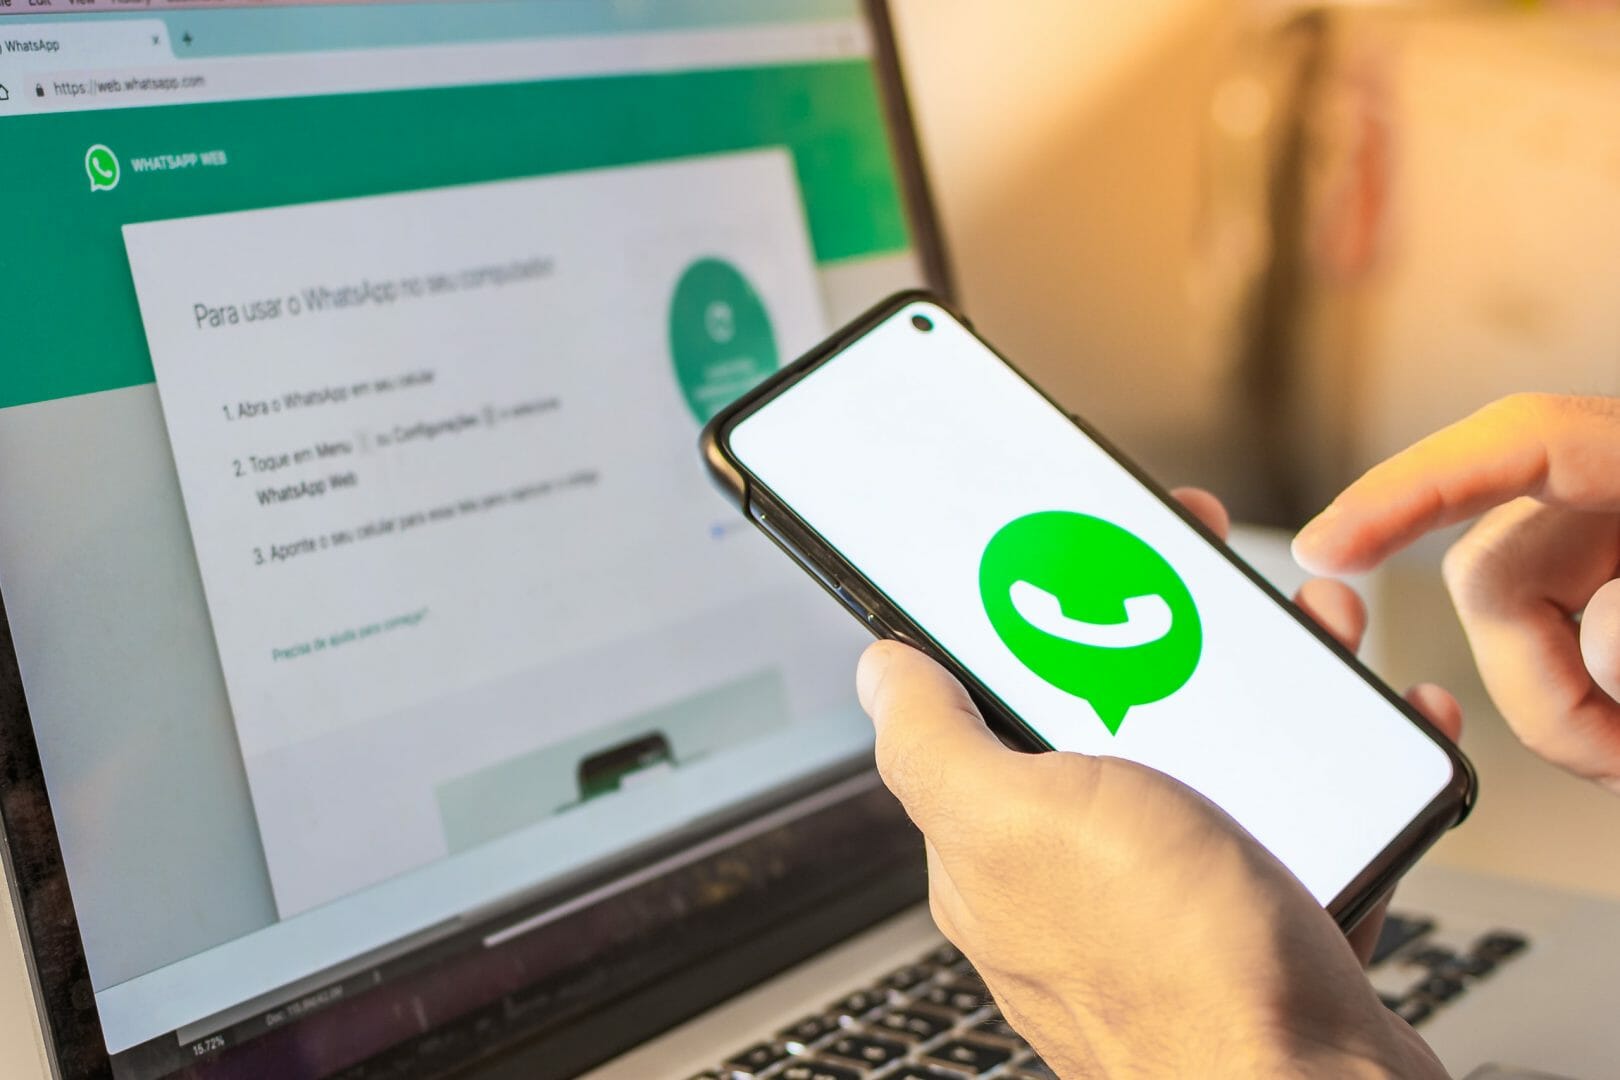 Itálico WhatsApp: Veja como utilizar esta fonte no App! em 2023